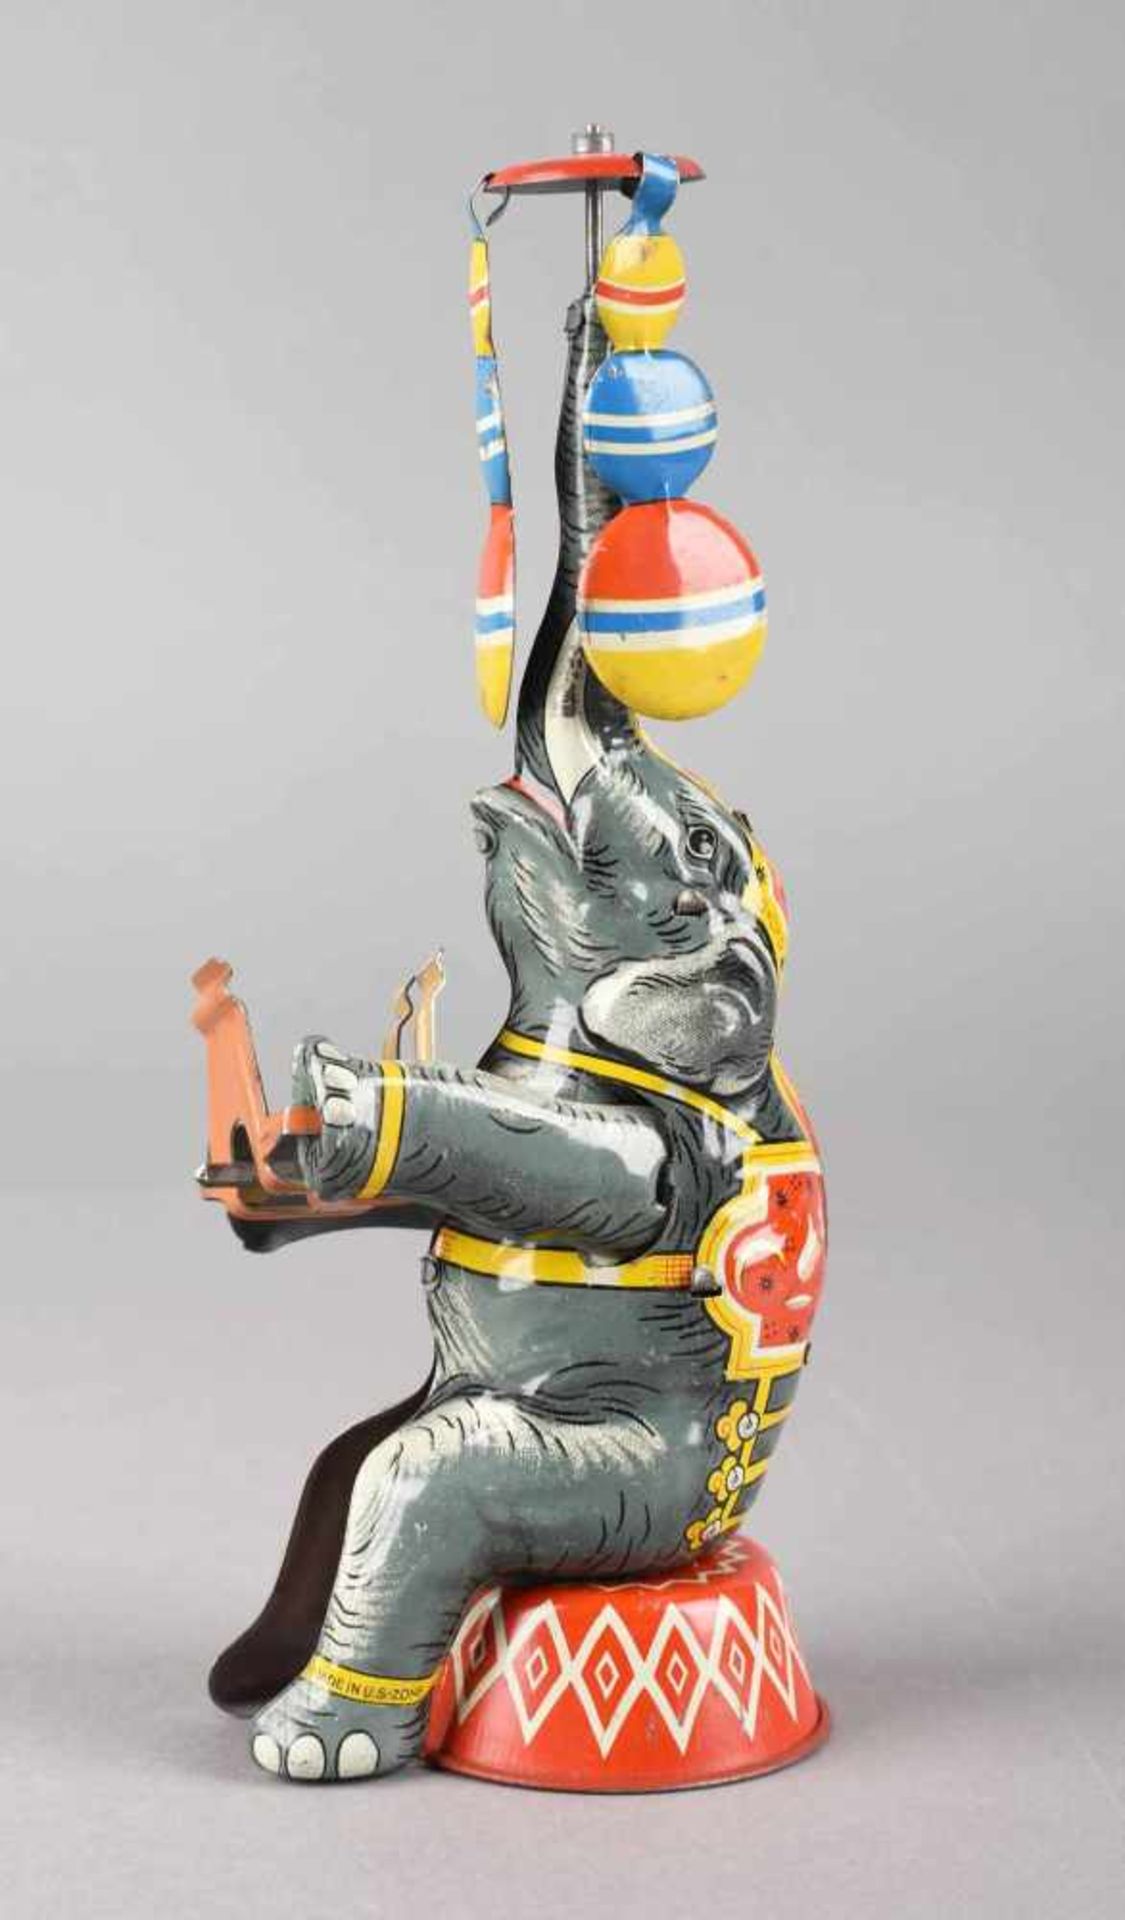 Elefantenfigur Blech, farbig lithografiert, Federaufzug, Elefant mit dem Rüssel jonglierend, - Bild 2 aus 2